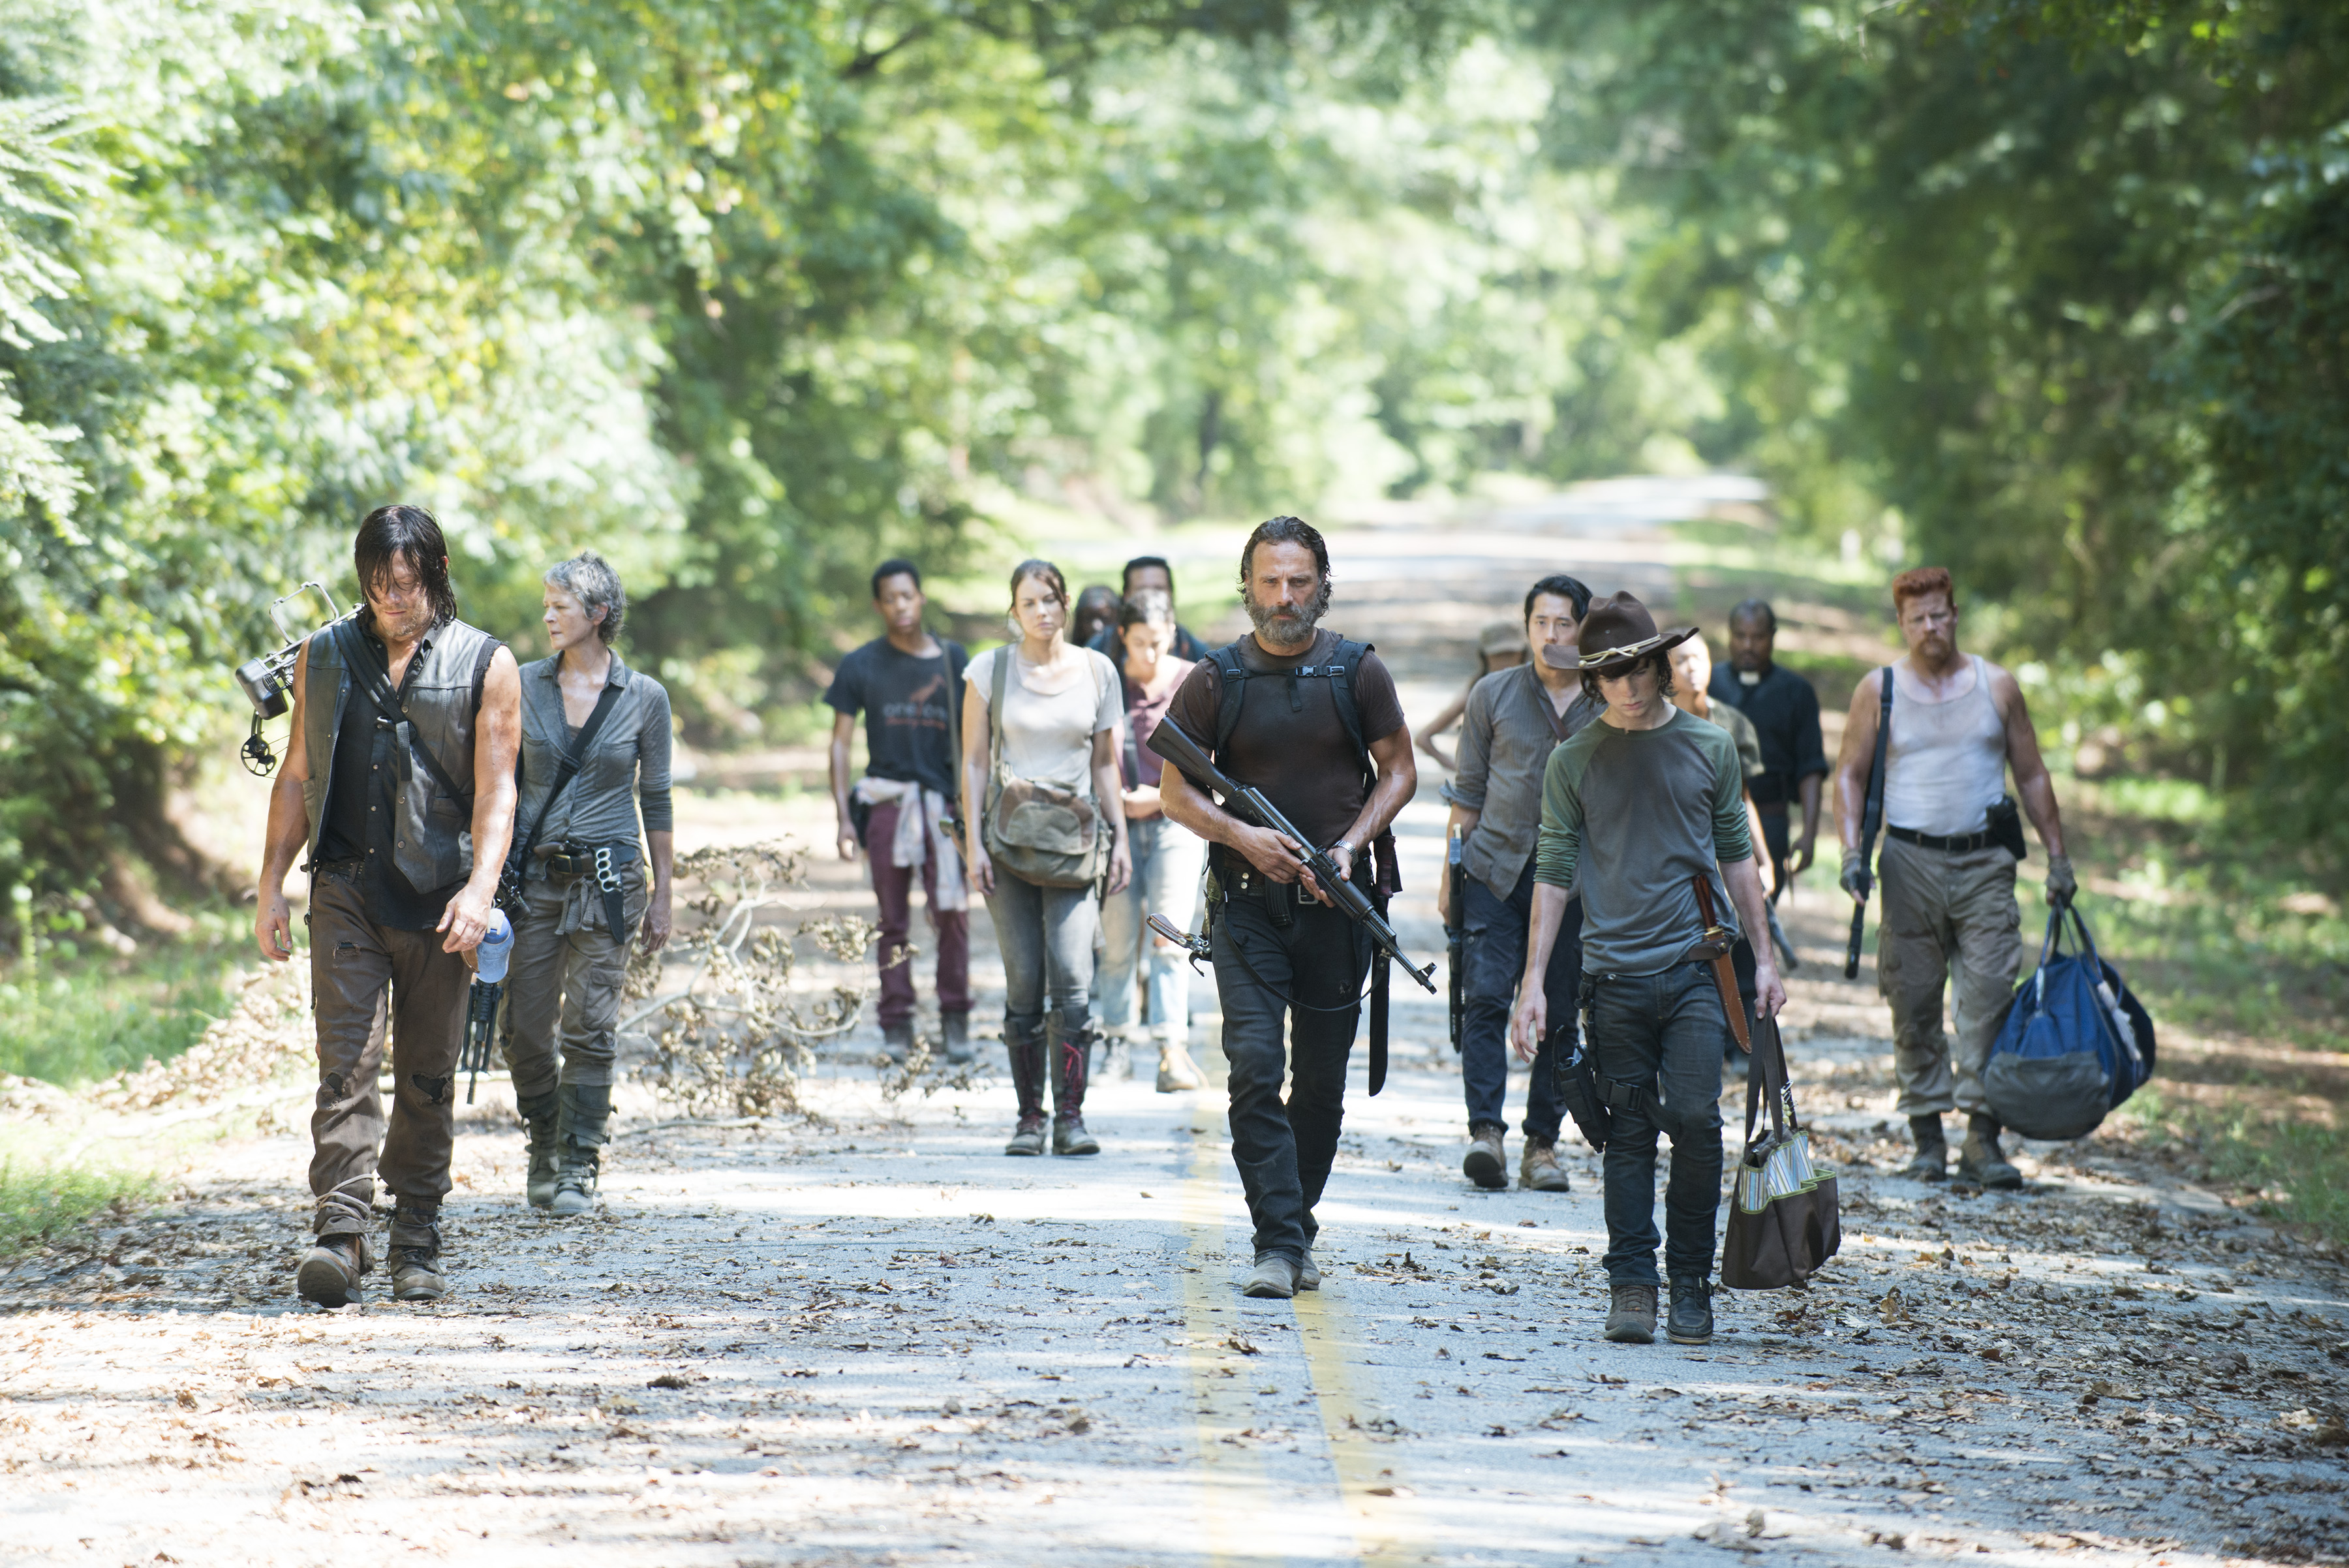 The Walking Dead_Season 5_Episode 10_Them_Looking Back (12) .